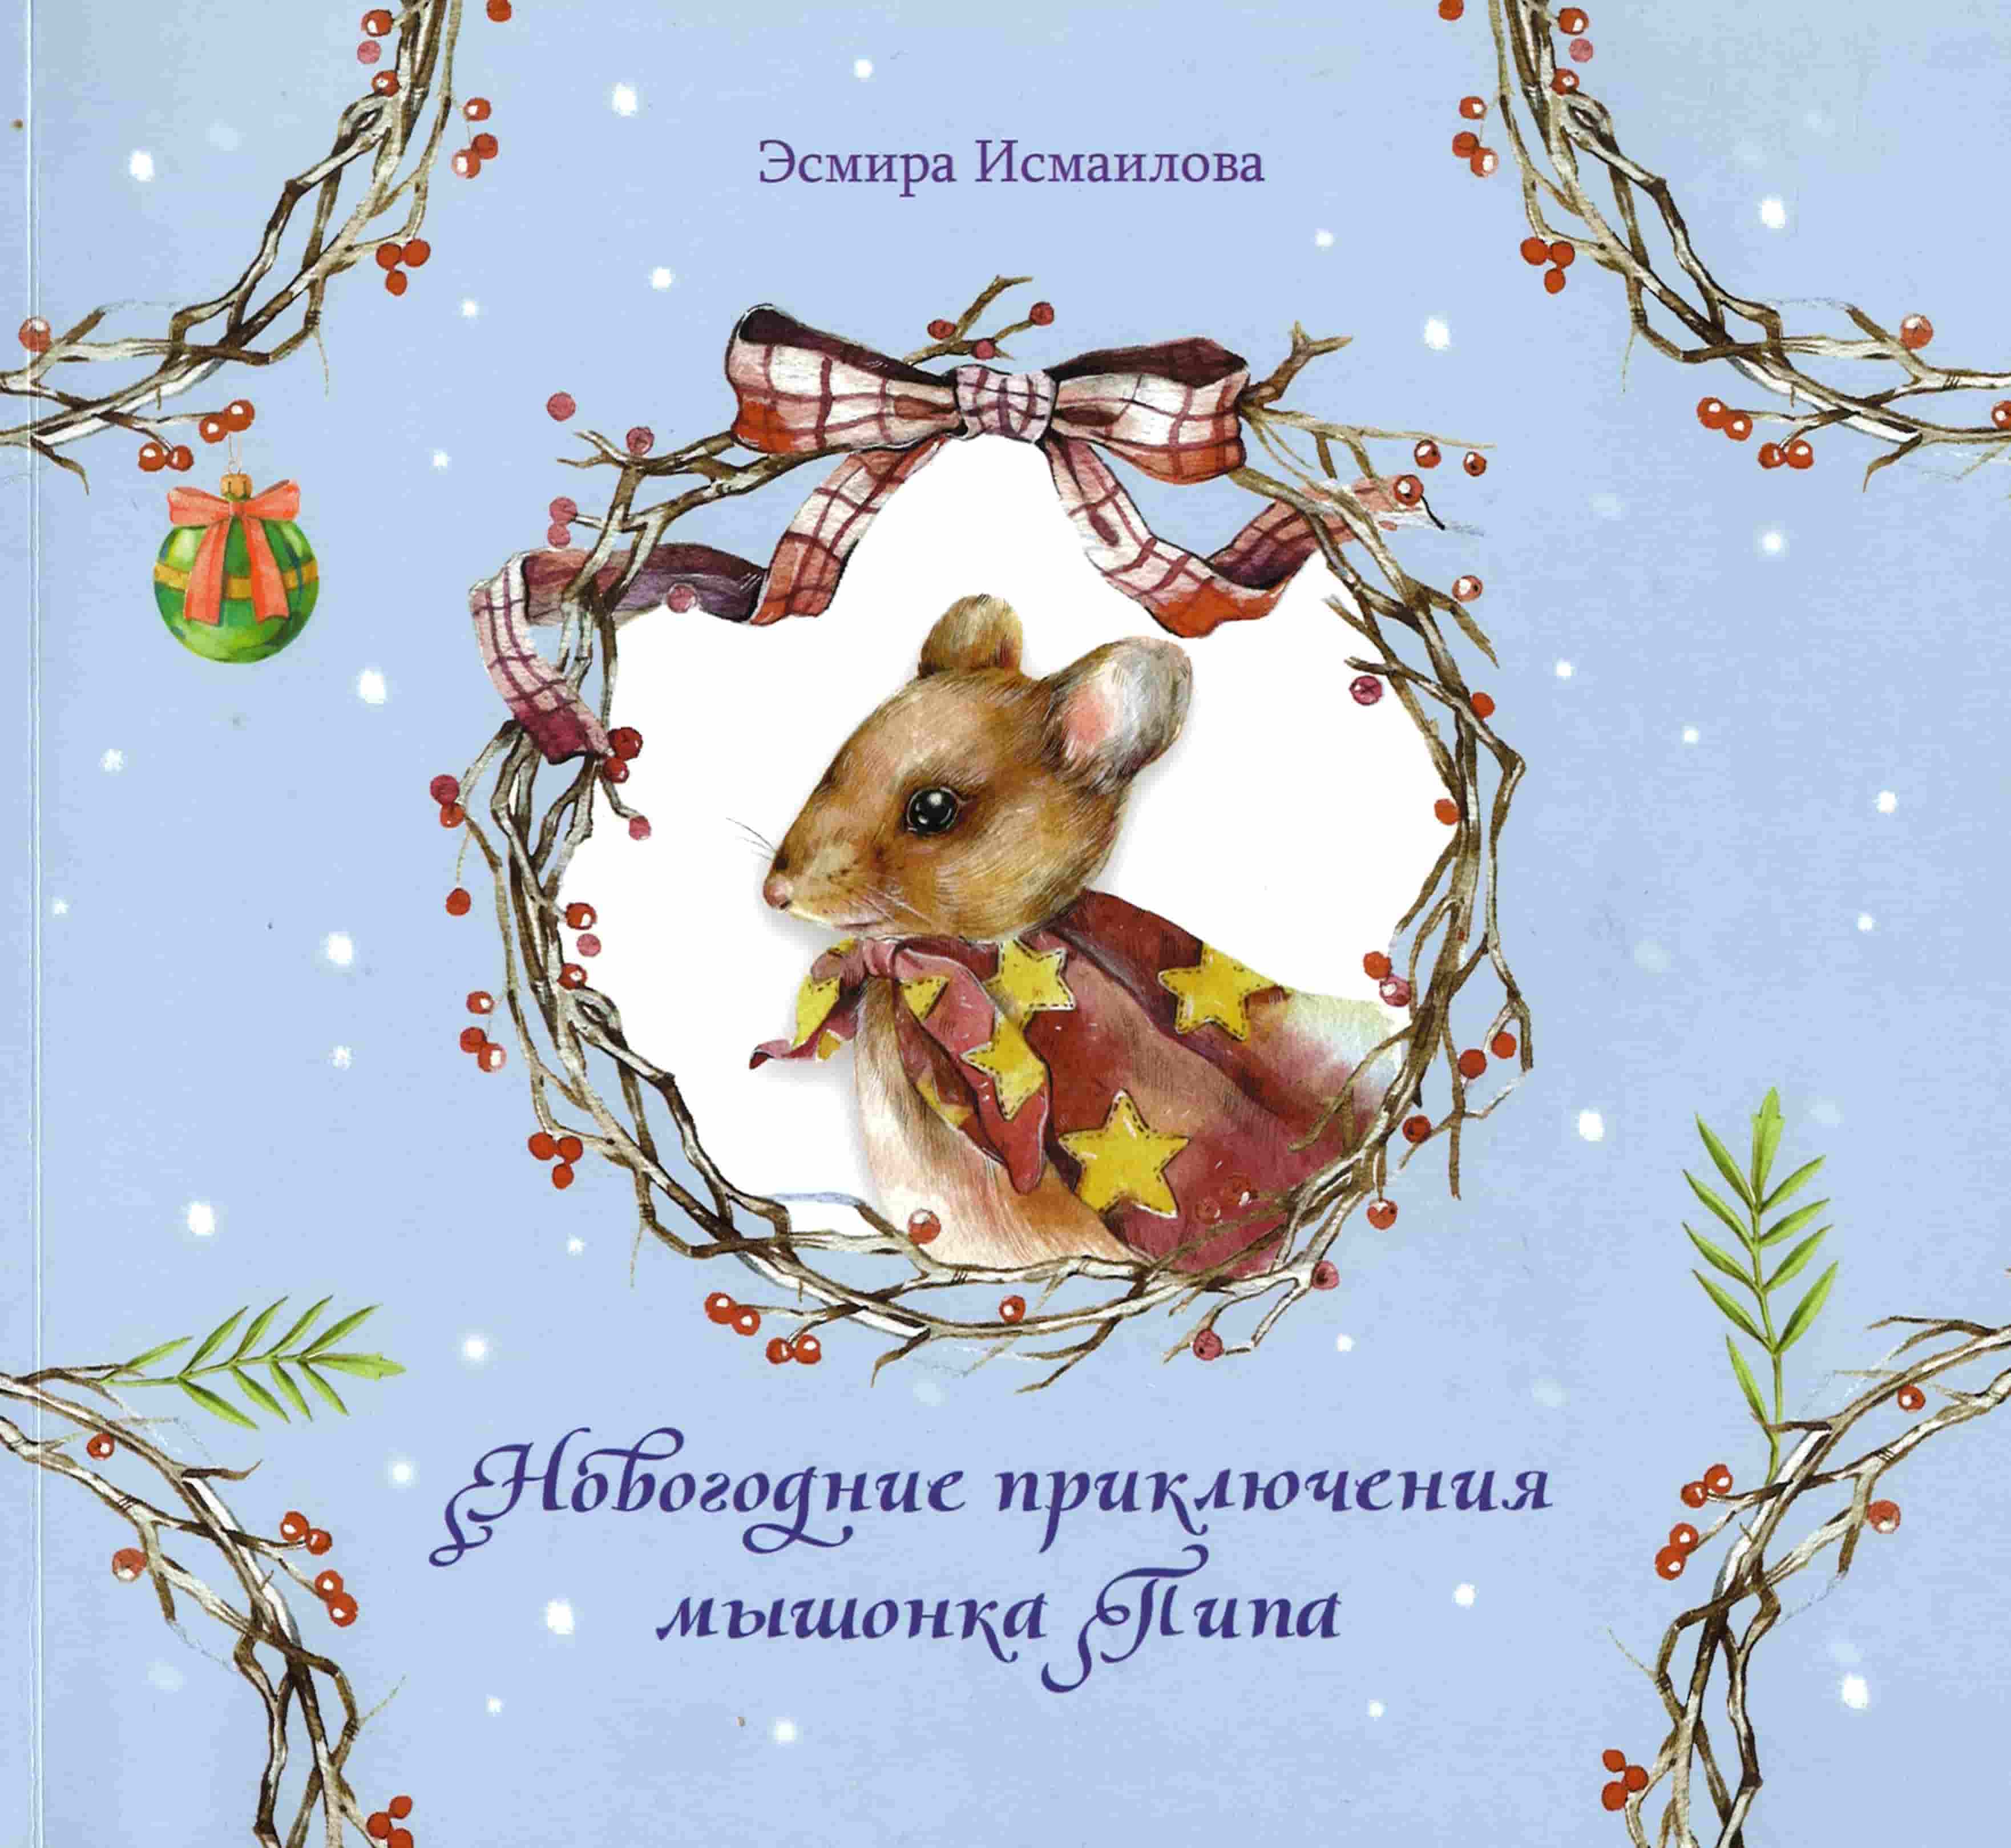 Исмаилова, Э. Р. Новогодние приключения мышонка Пипа